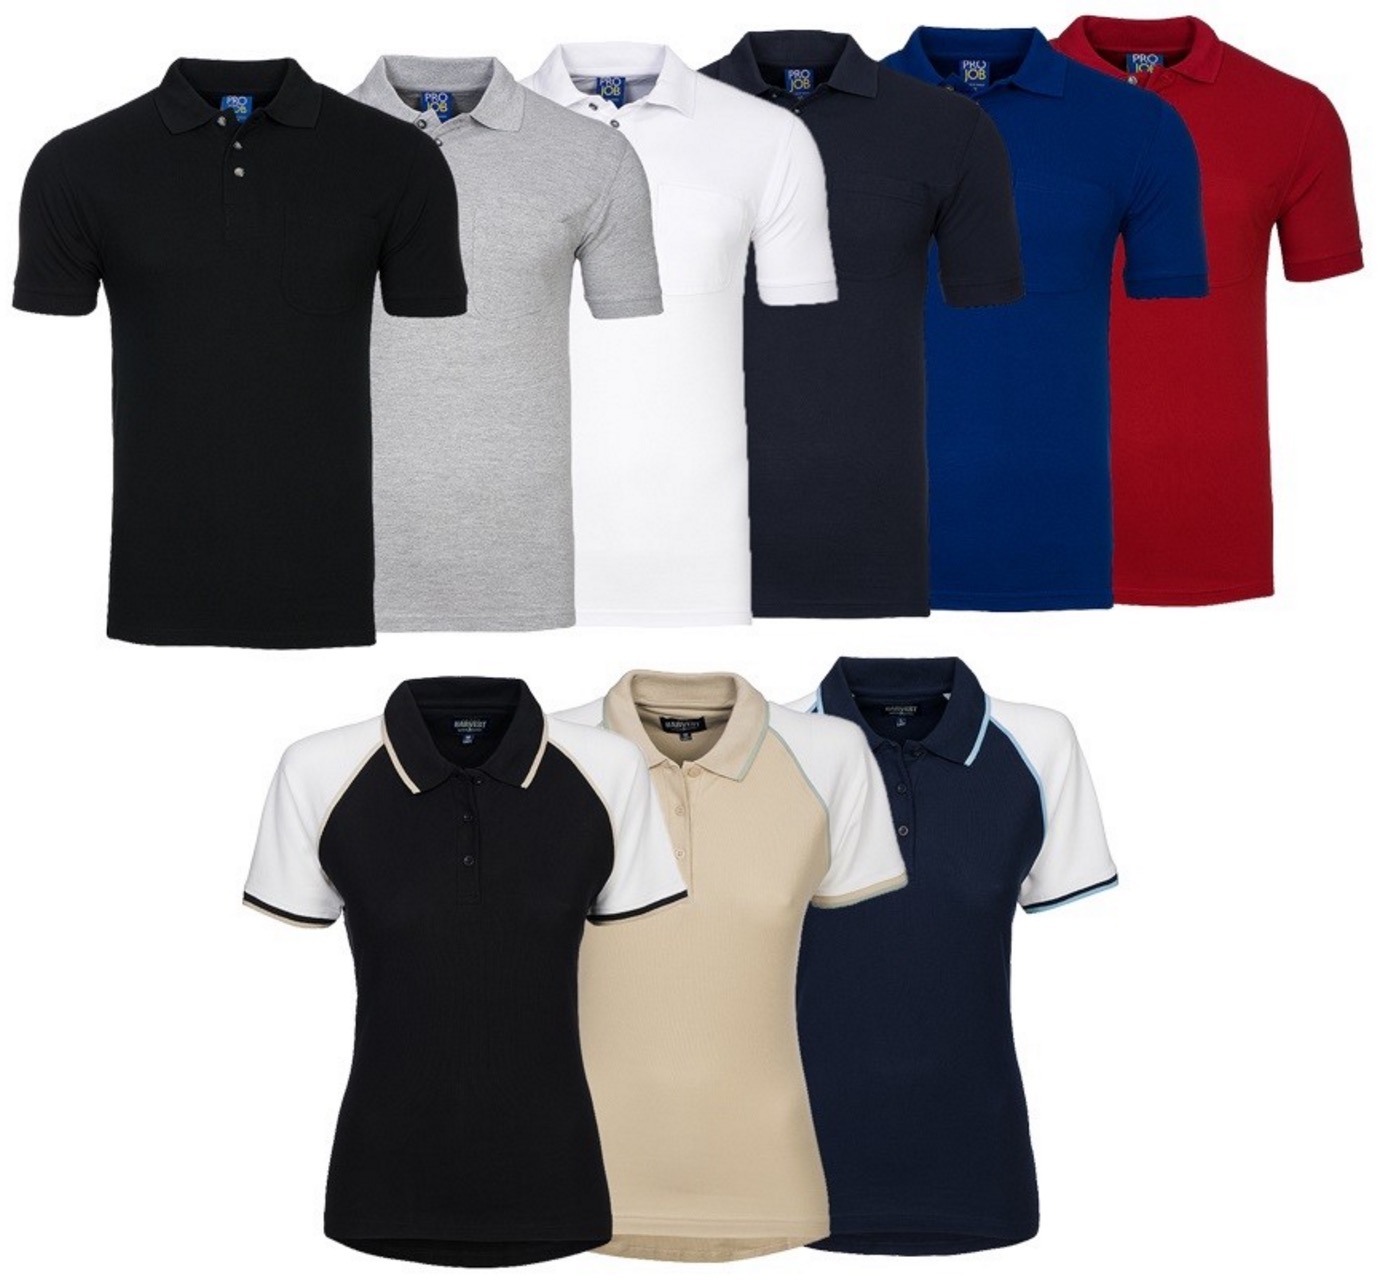 Outlet46: Viele verschiedene Marken-Poloshirts schon bereits ab 1,99 Euro inkl. Versand